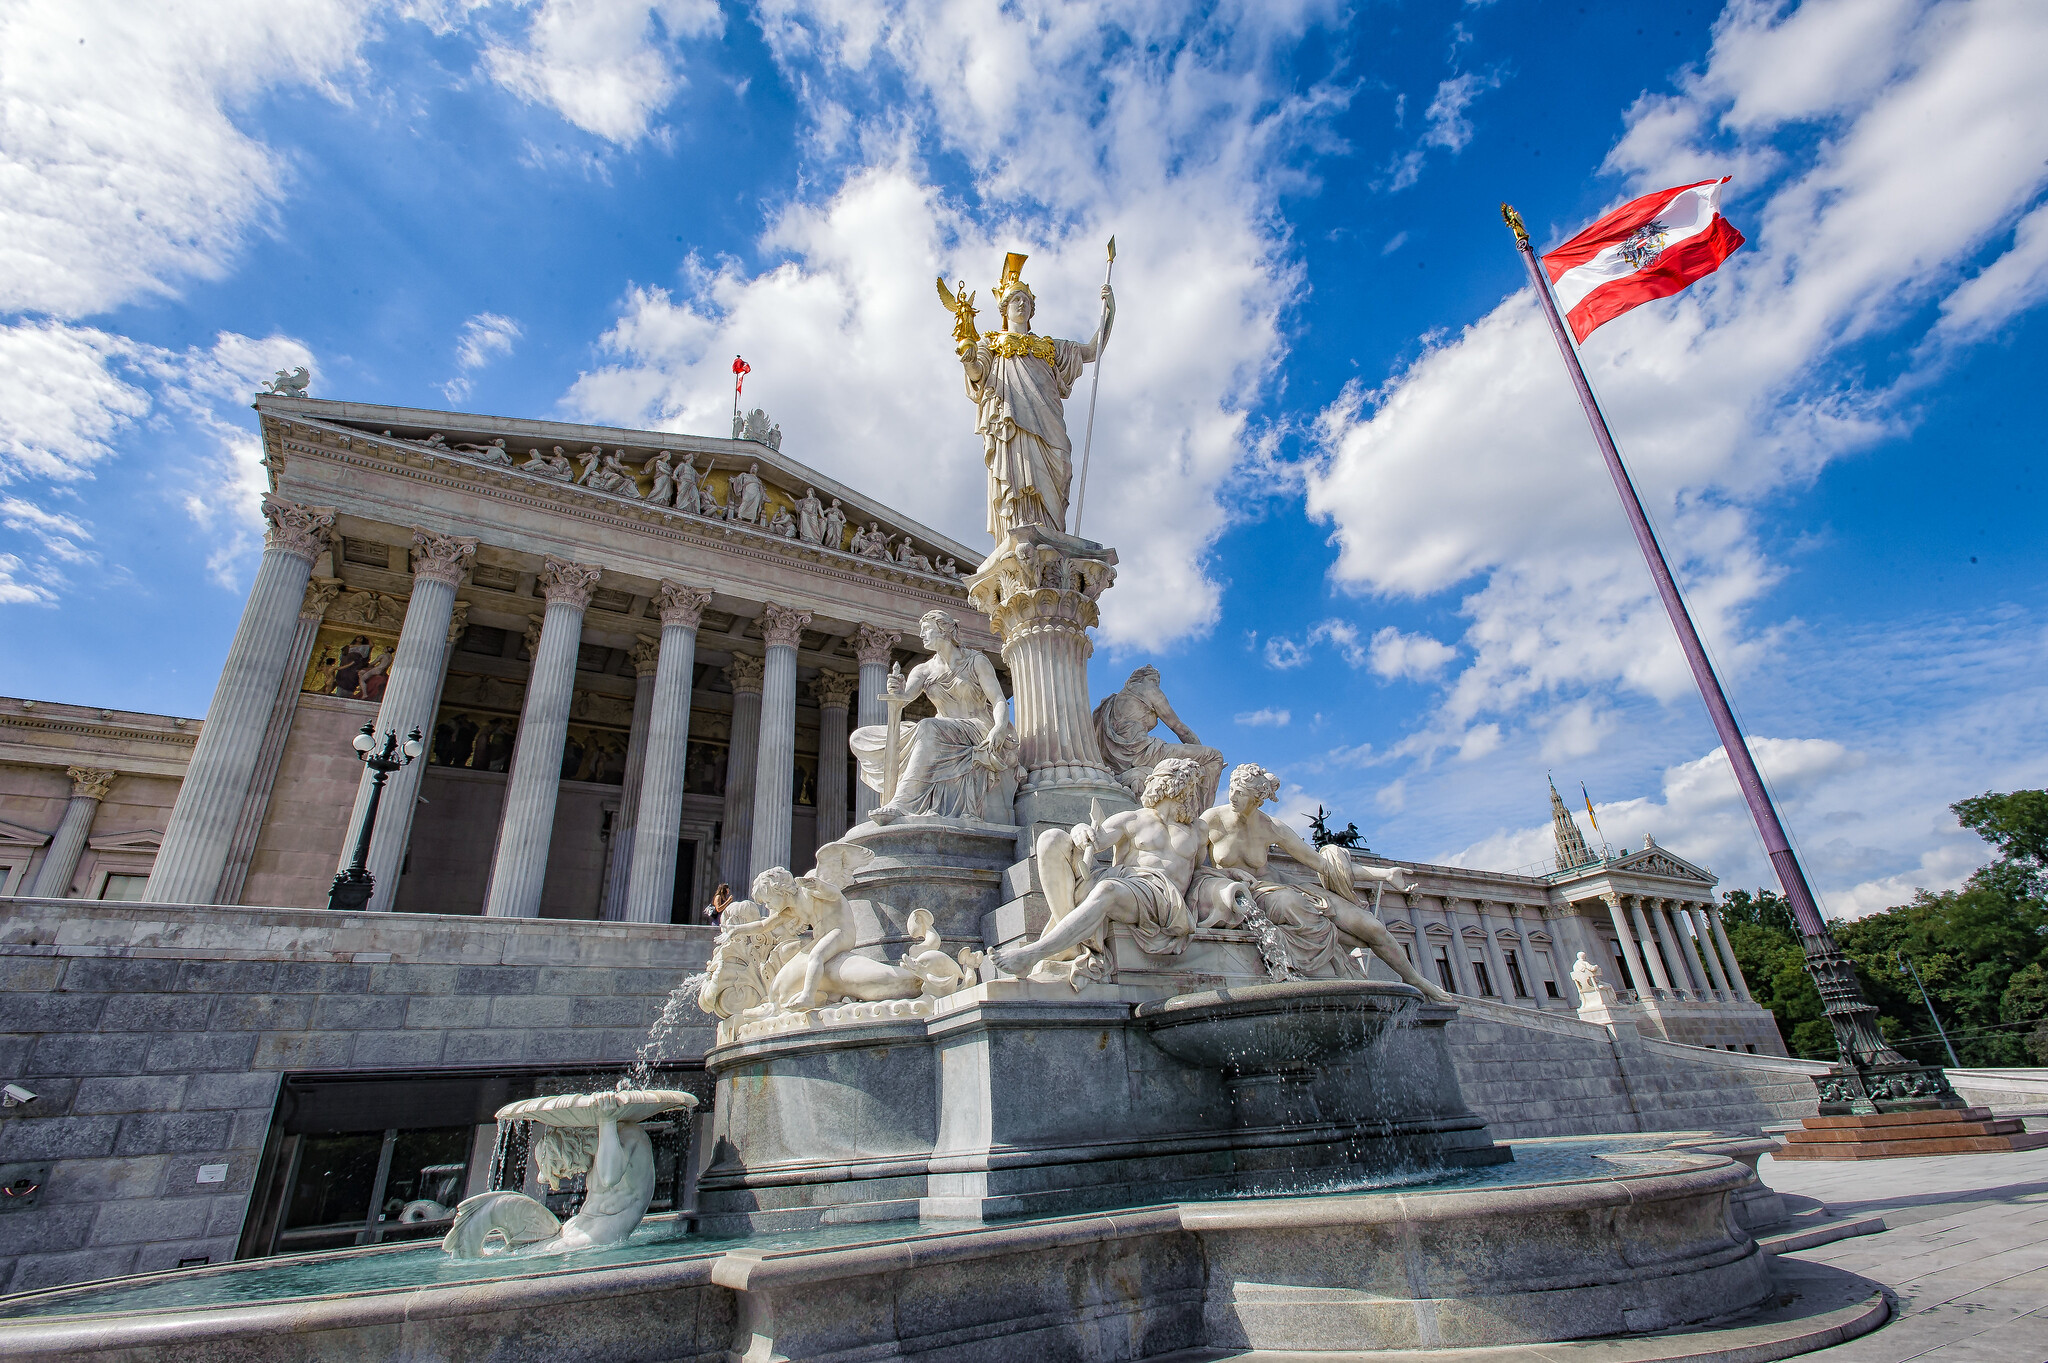 Österreichisches Parlament in Wien Statue blauer Himmel mit Wolken österreichische Flagge